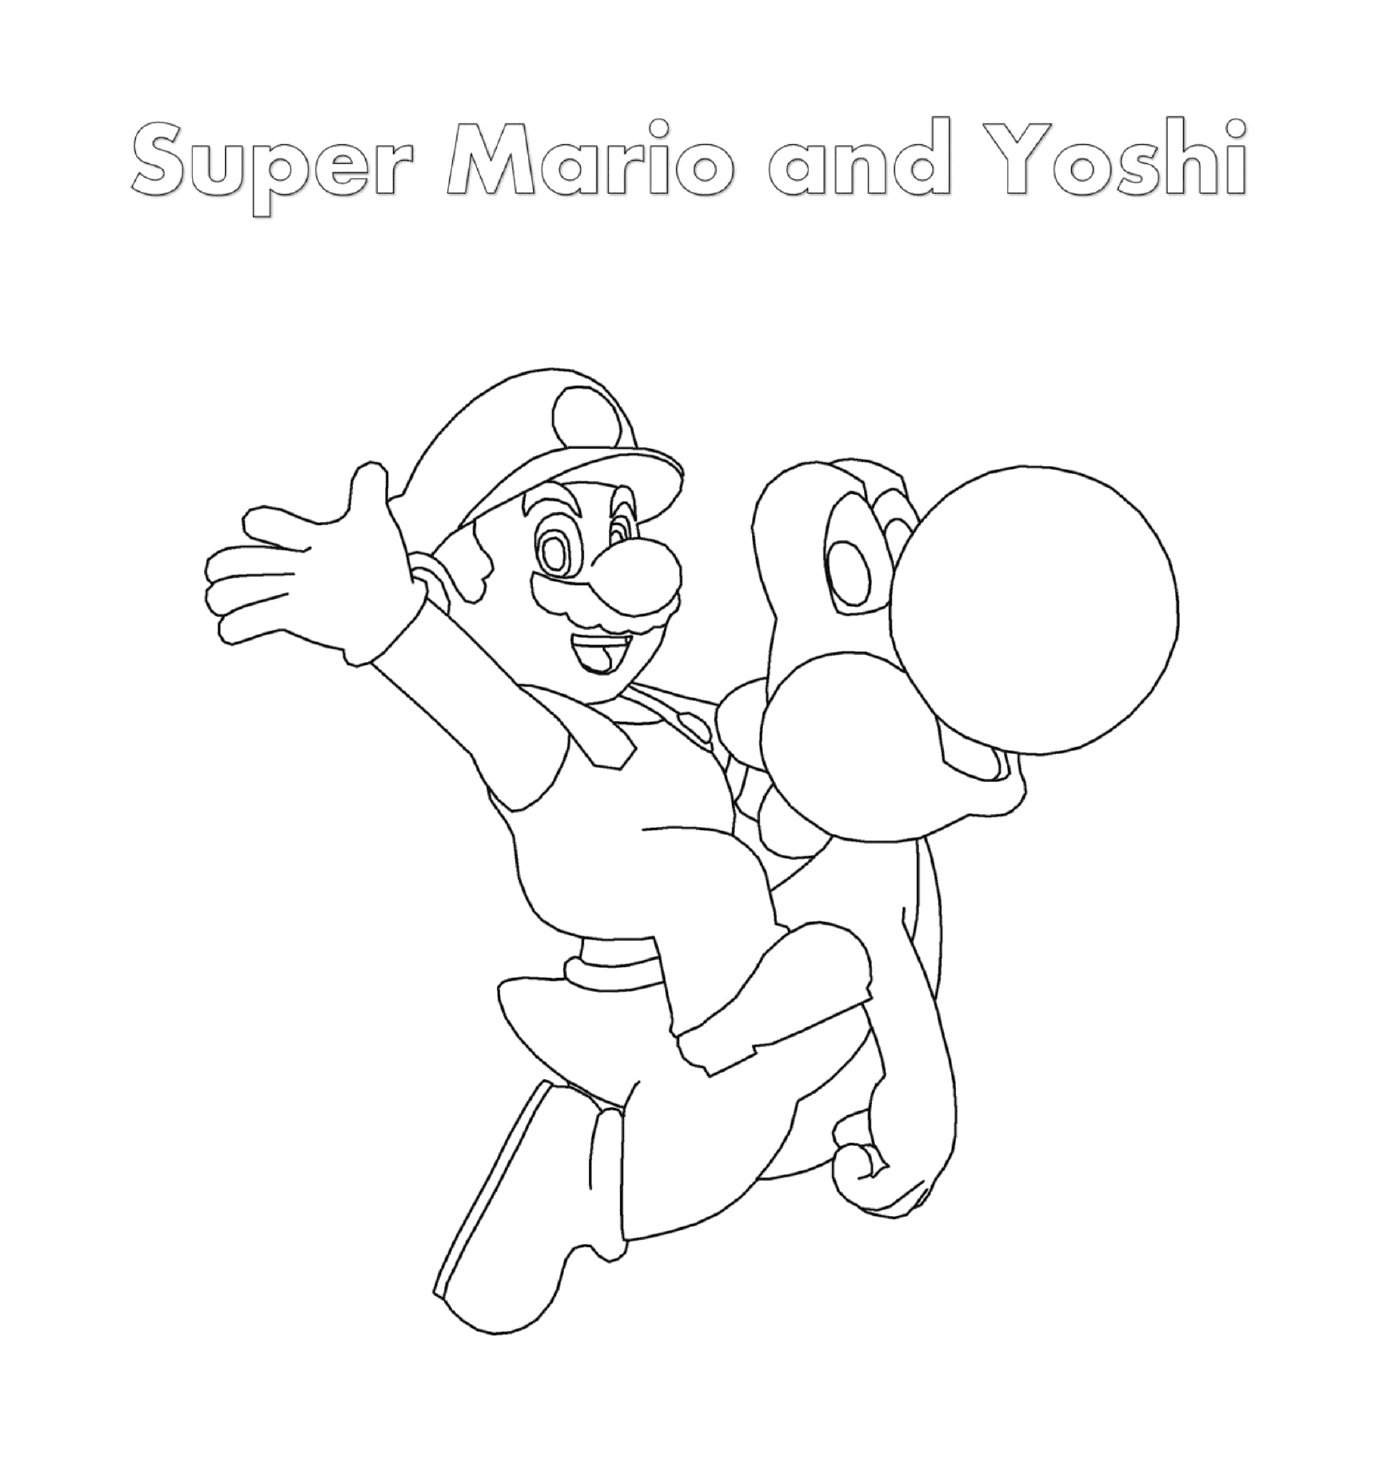  Super Mario y Yoshi con una persona sosteniendo una bala 